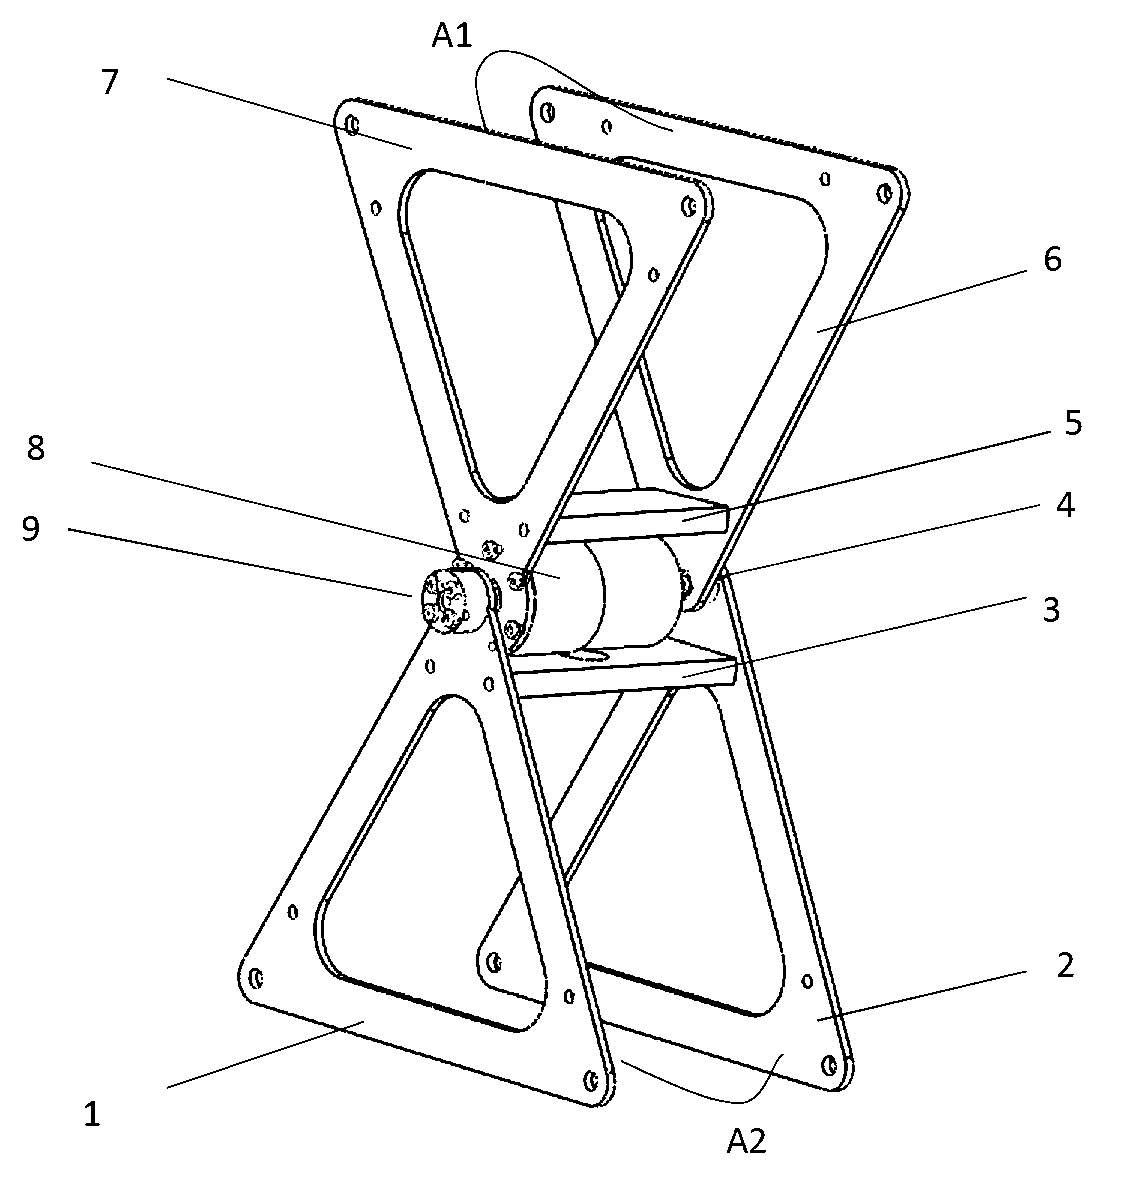 Hexagonal rolling mechanism